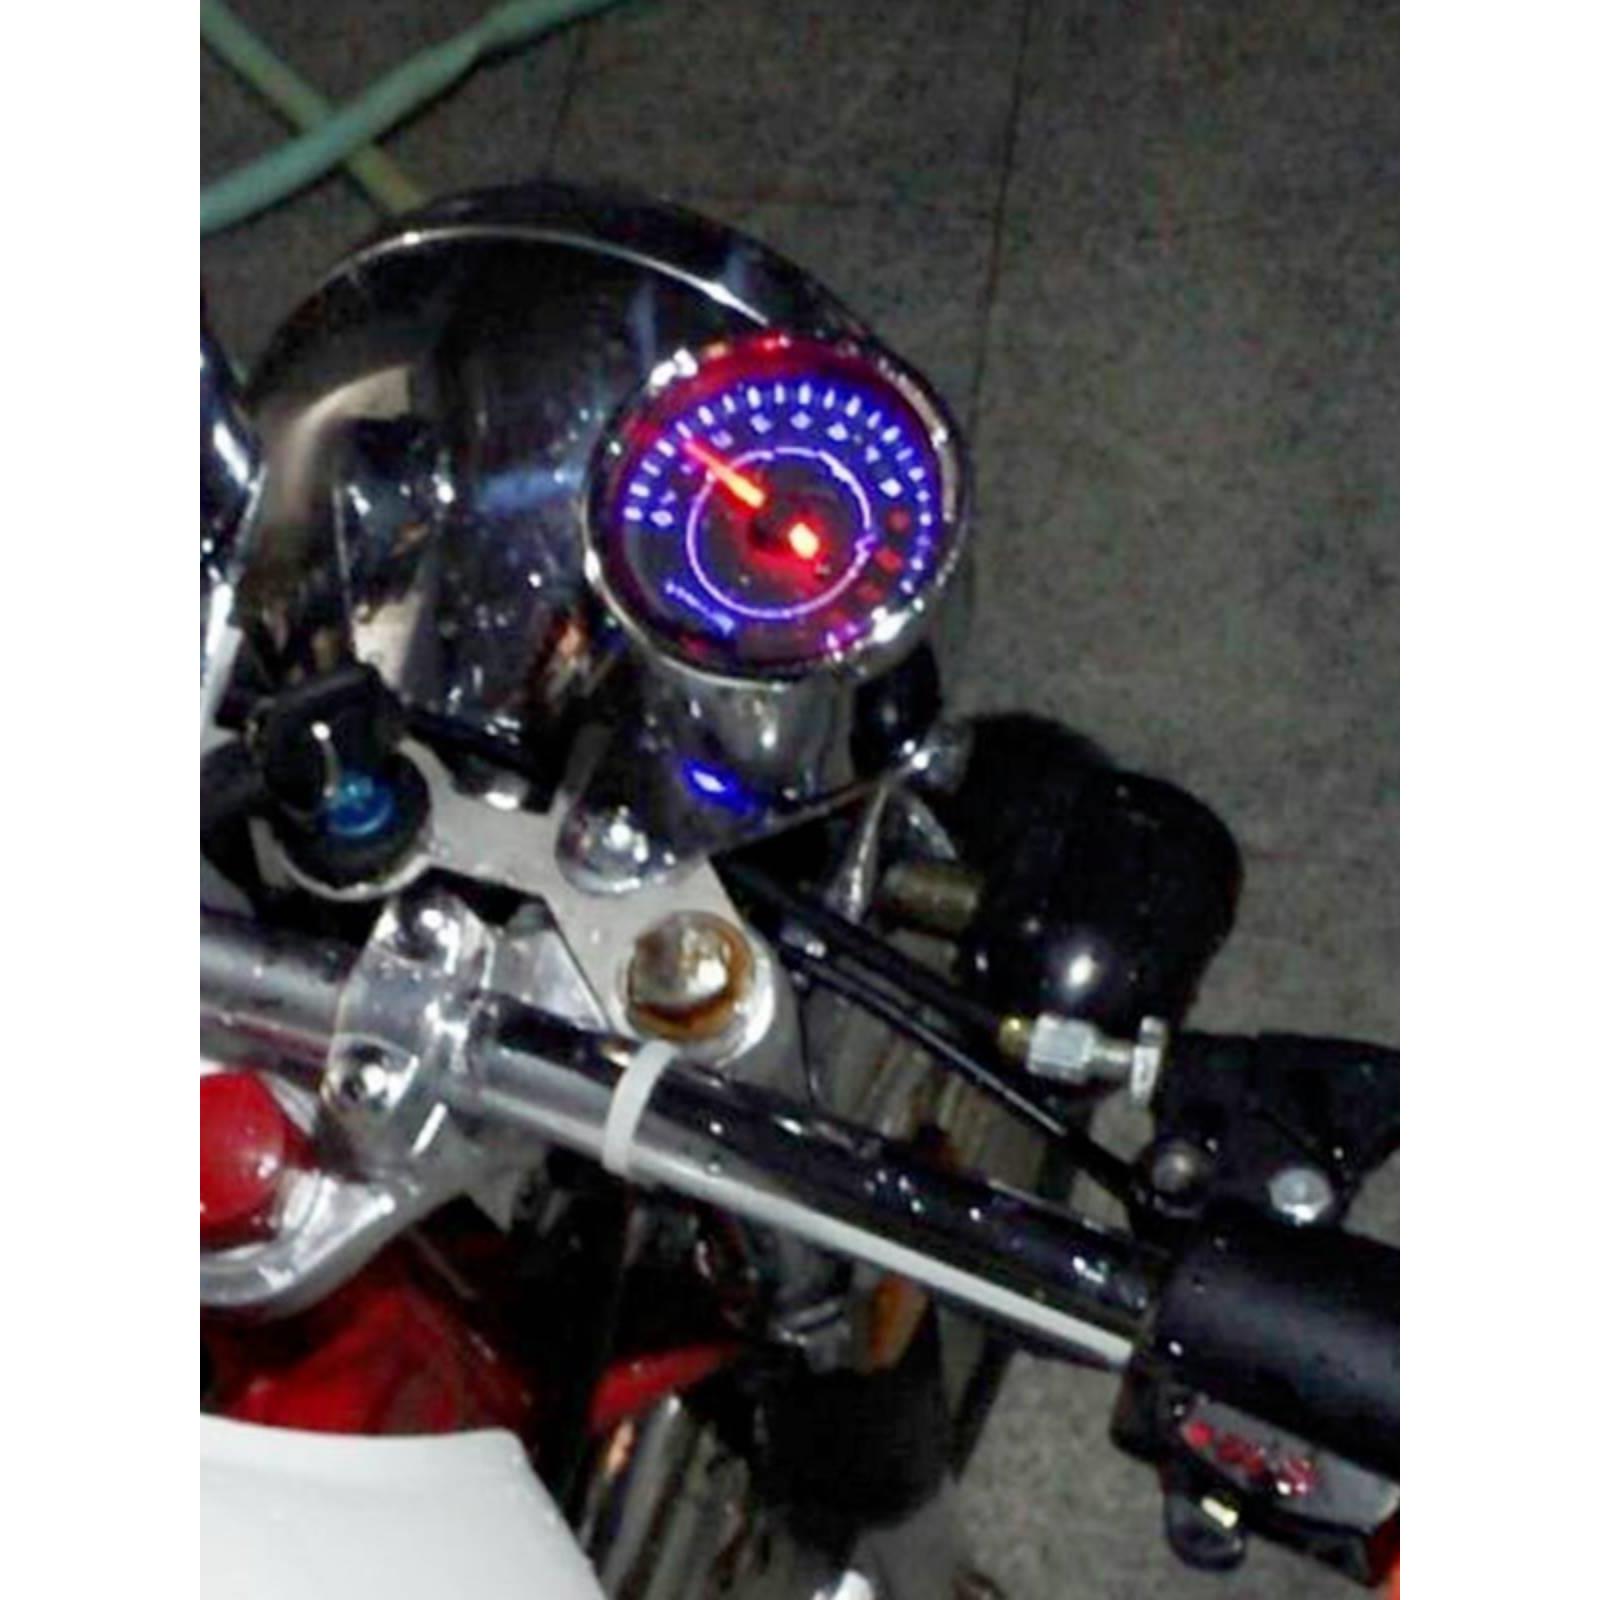 摩托车改装复古仪表转速表LED机械电子感应怠速表CG125小太子250